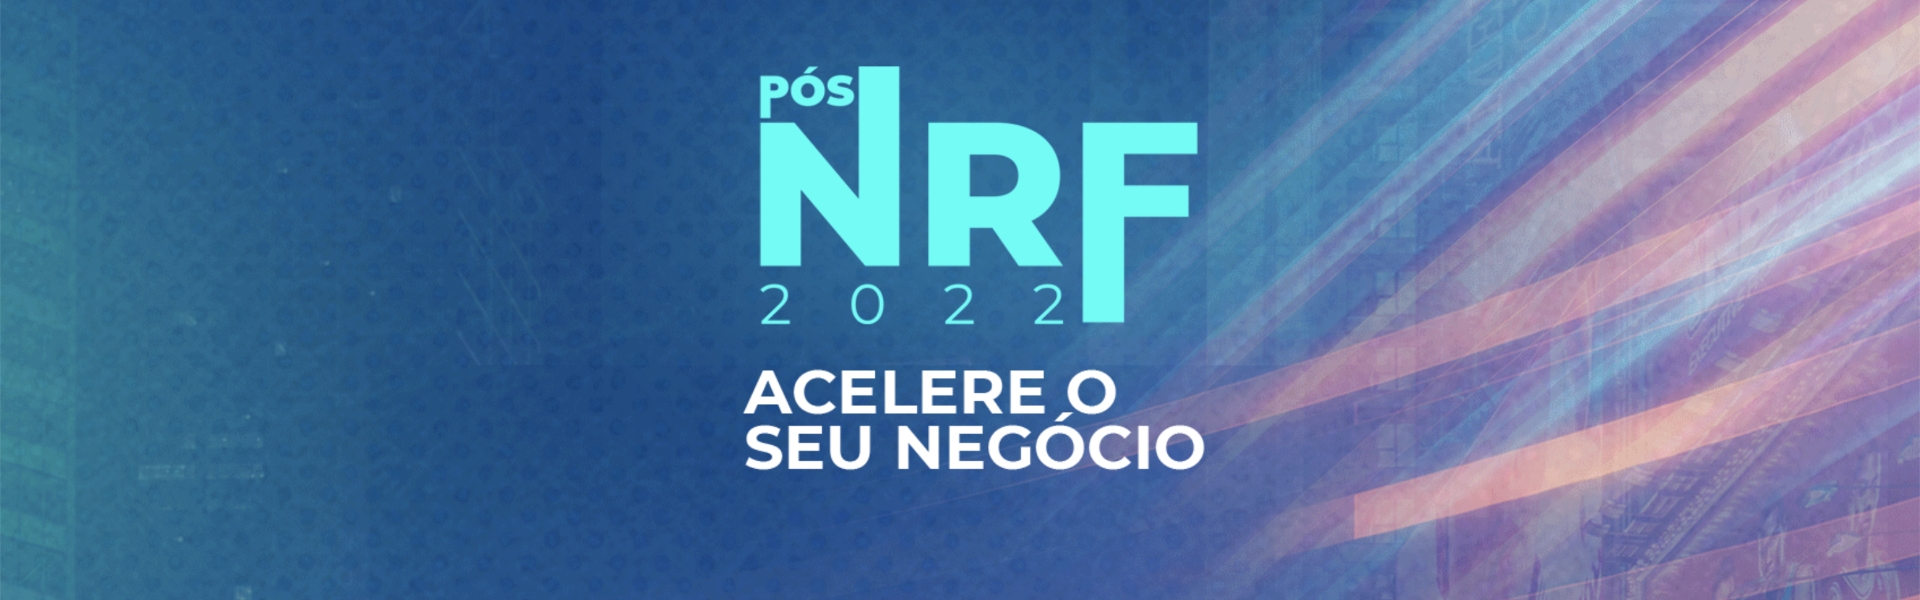 PÓS NRF 2022